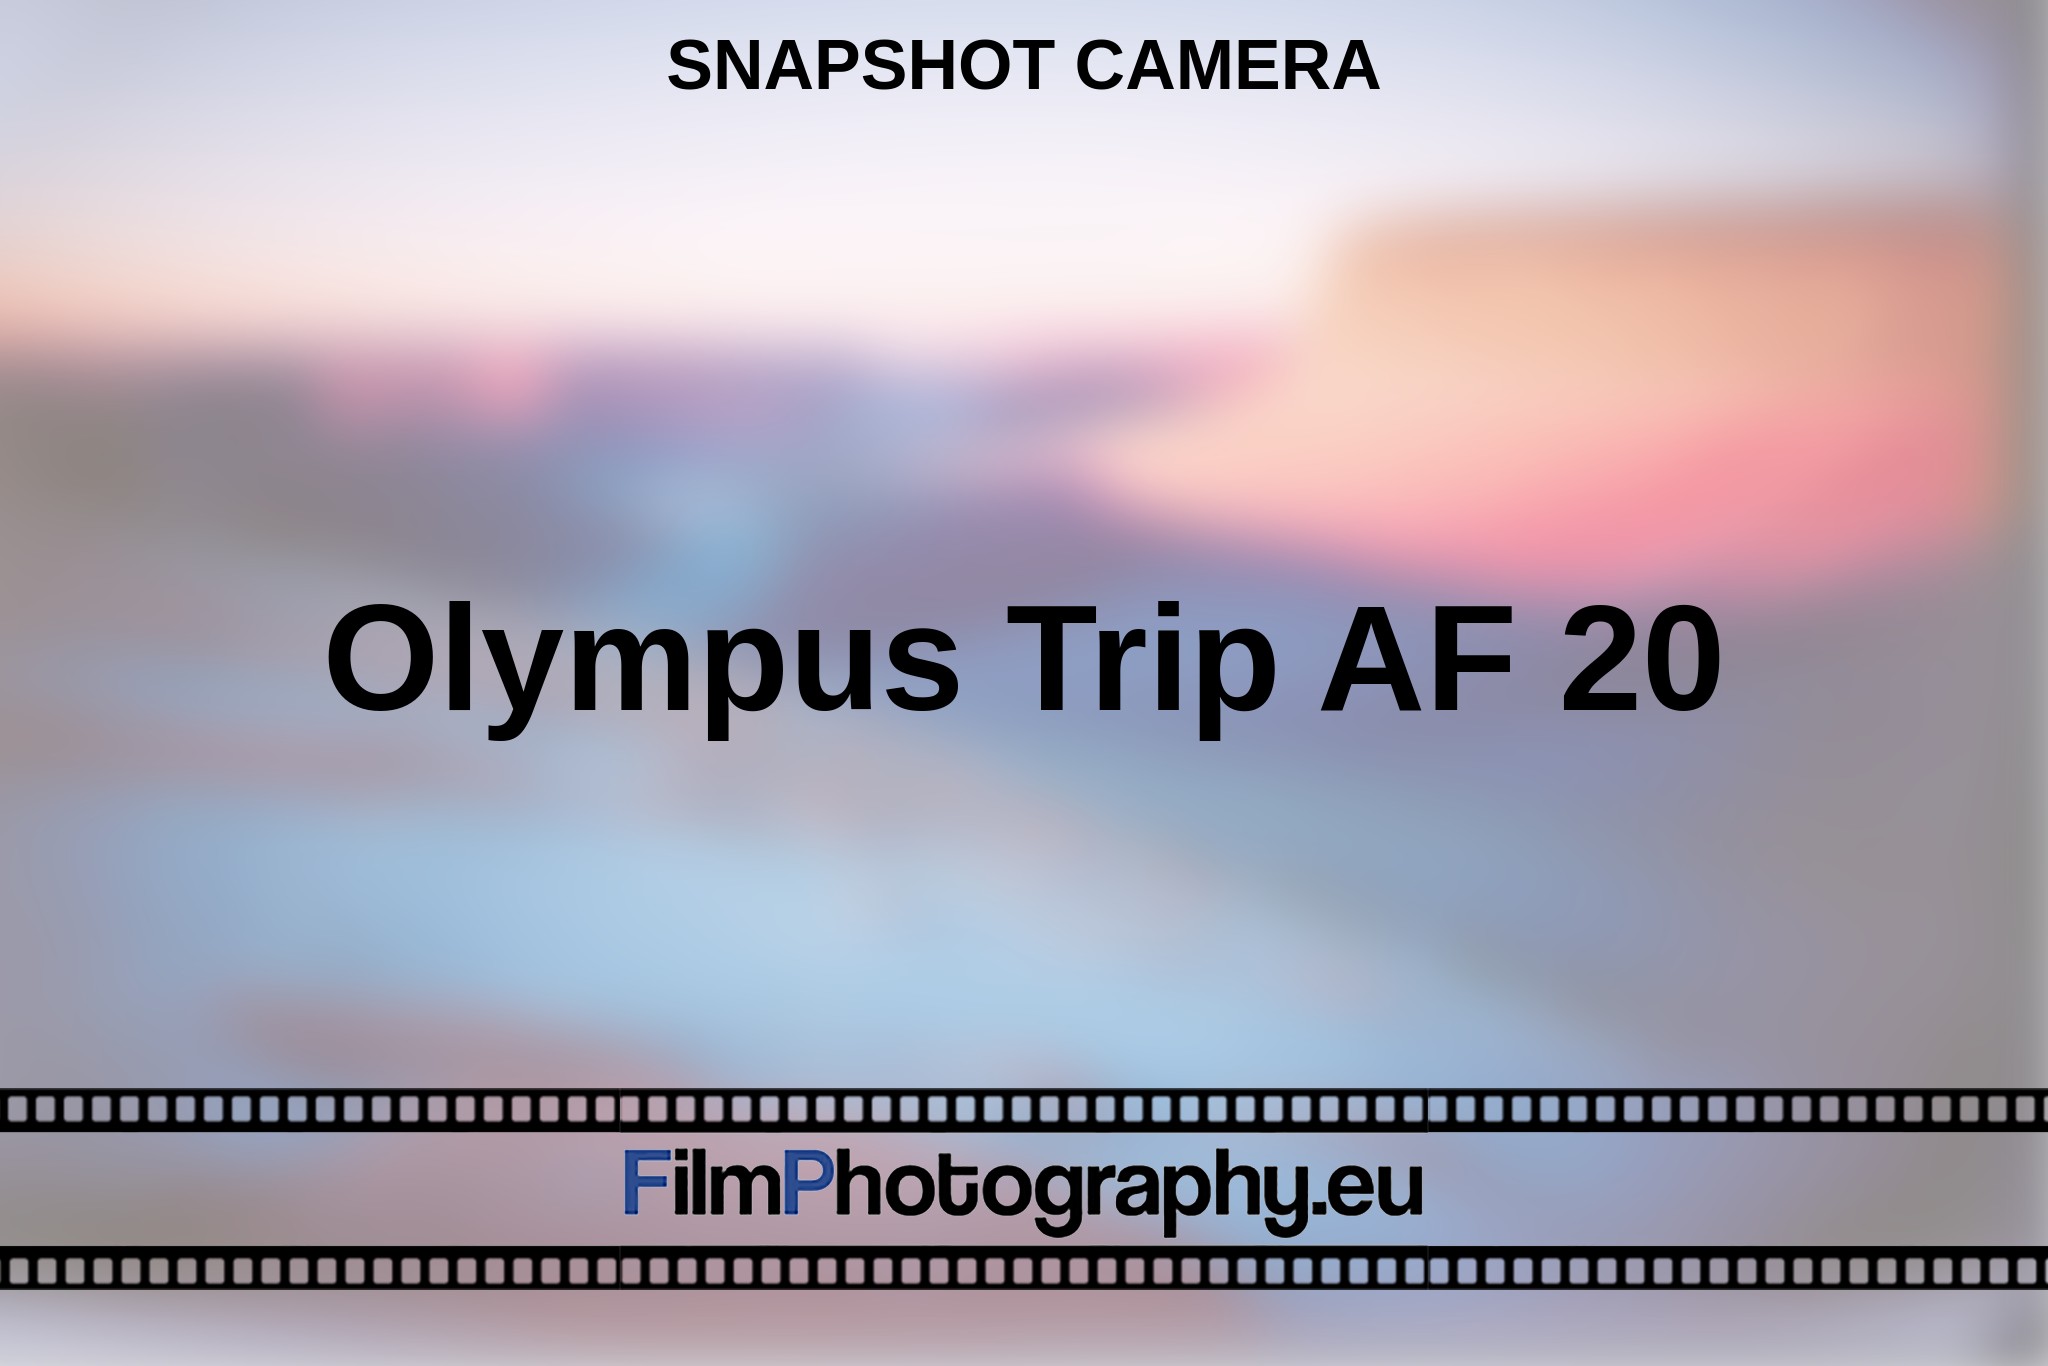 olympus-trip-af-20-snapshot-camera-en-bnv.jpg